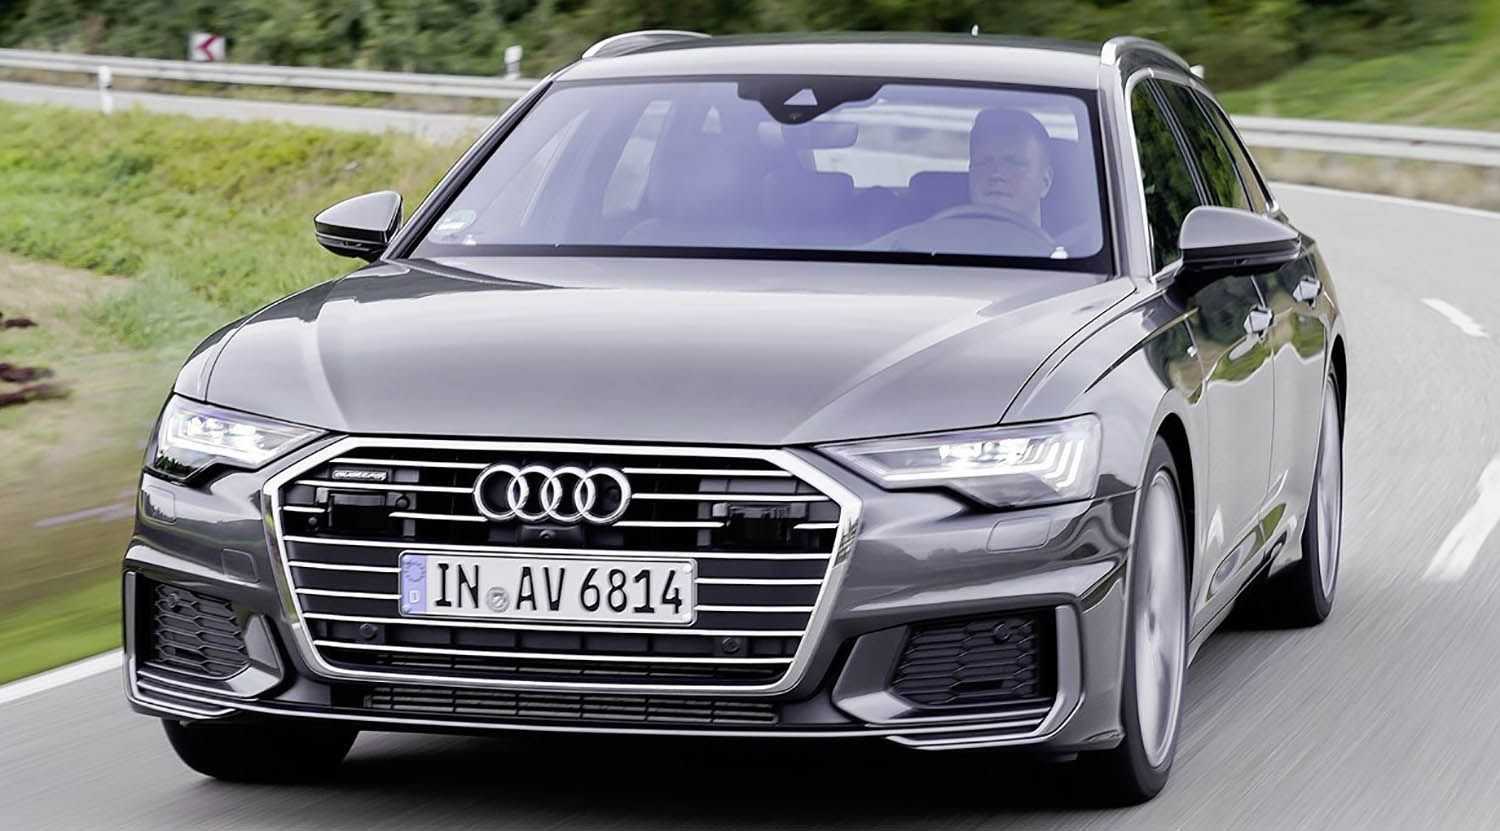 Audi a6 c7 технические характеристики обзор описание фото видео комплектация